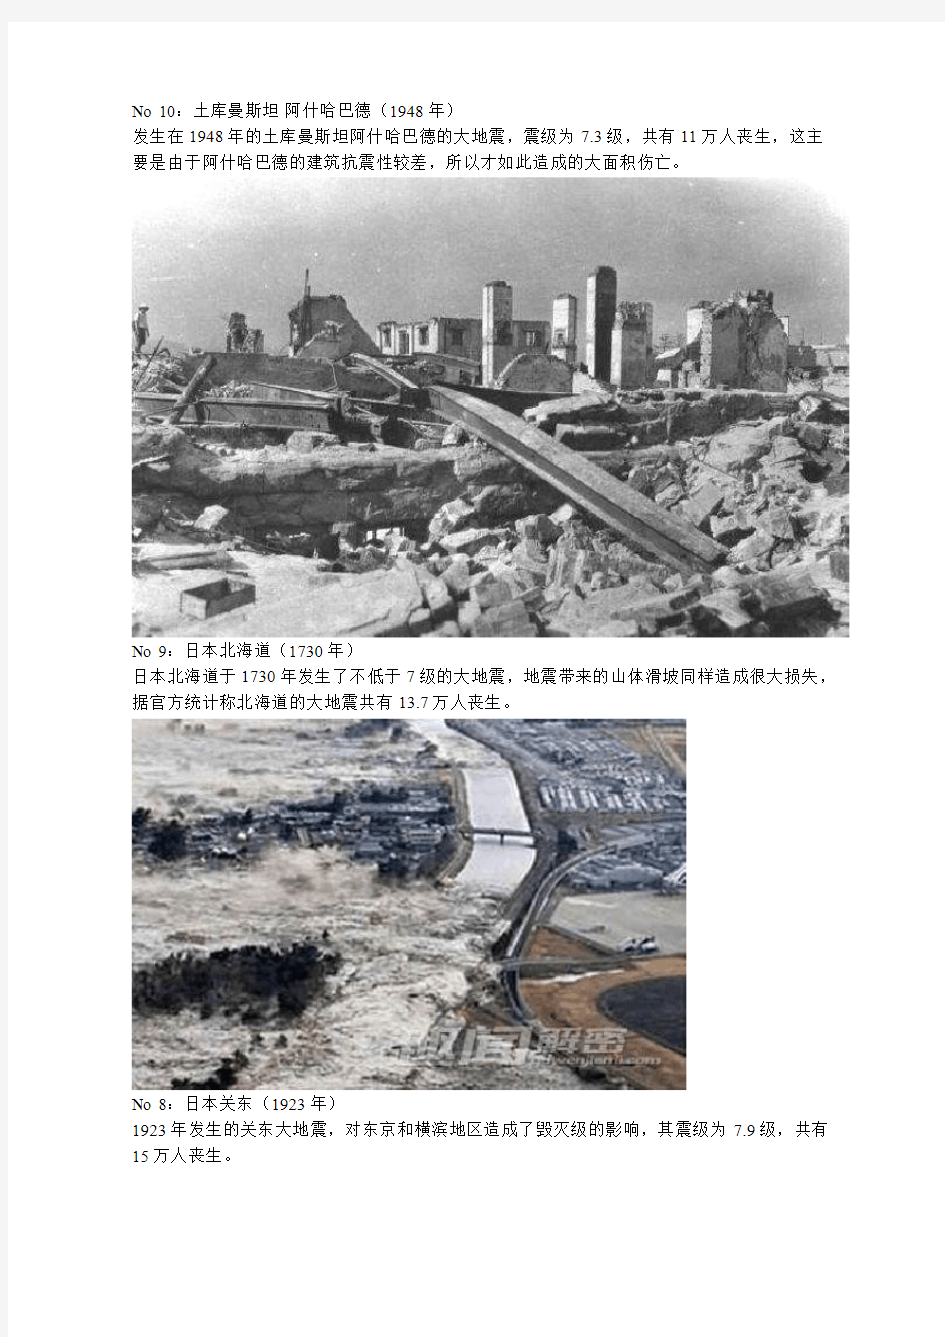 盘点人类历史上最严重的十次大地震,中国占了三分之一